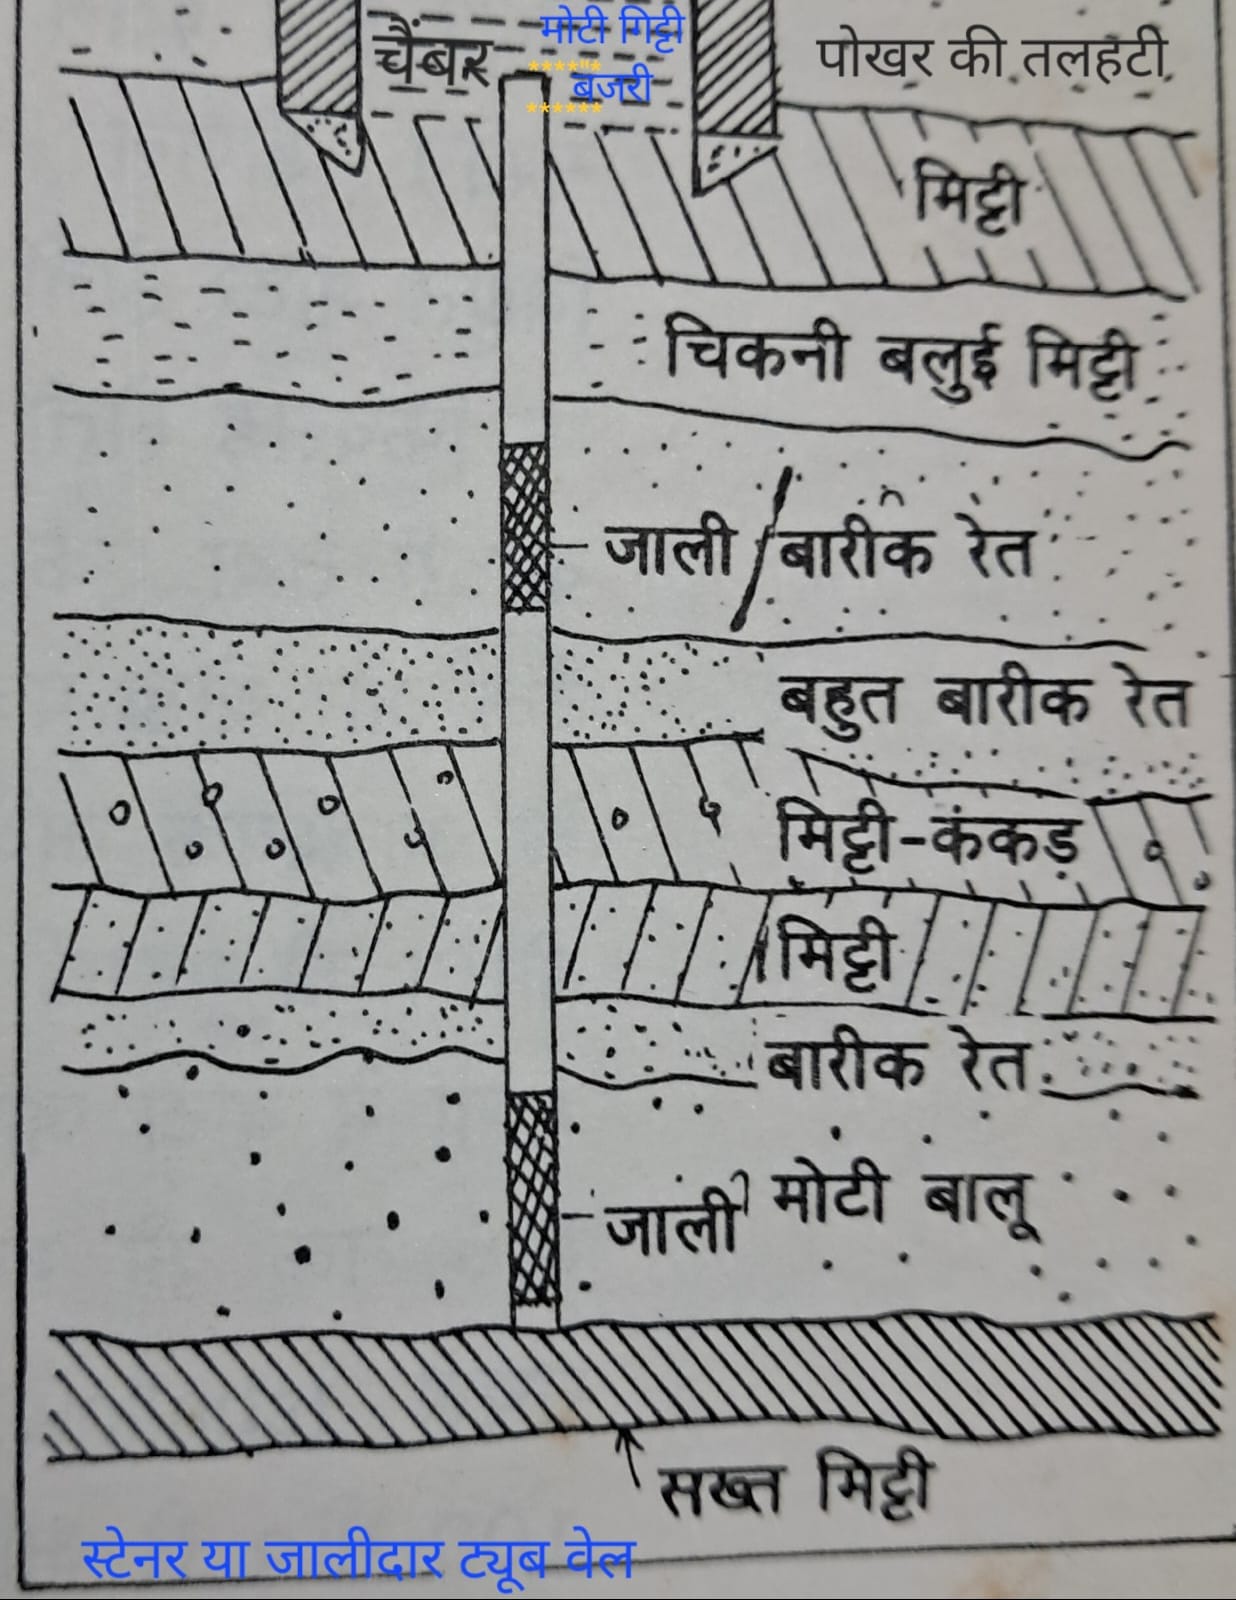 शेरपुर में रिचार्ज सिस्टम का प्रतिरेख 2